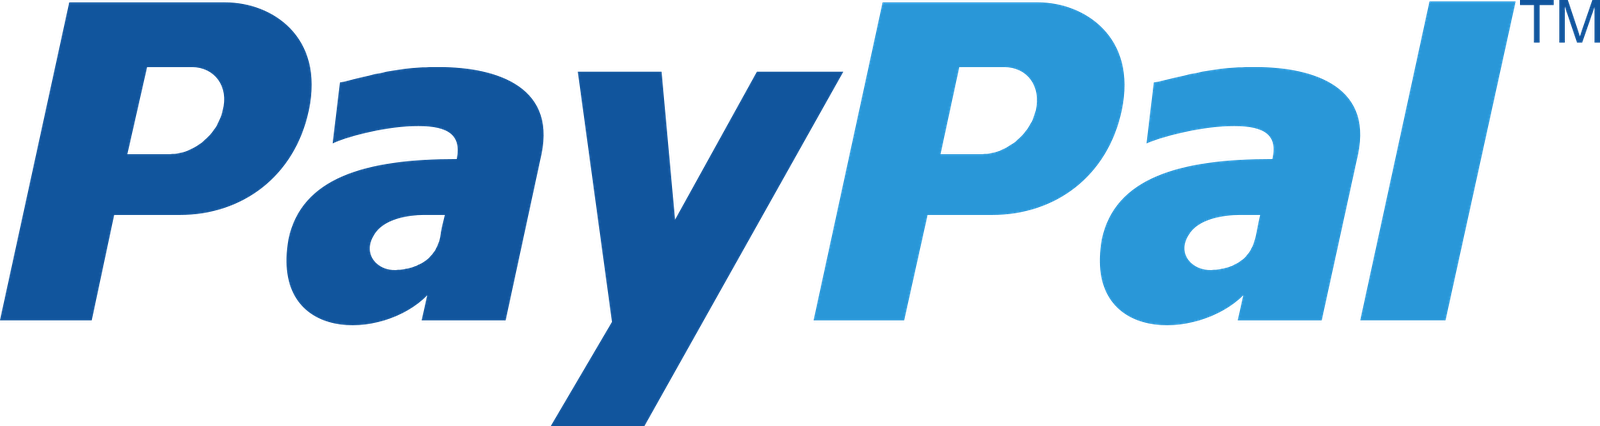 paypal logo png 2140